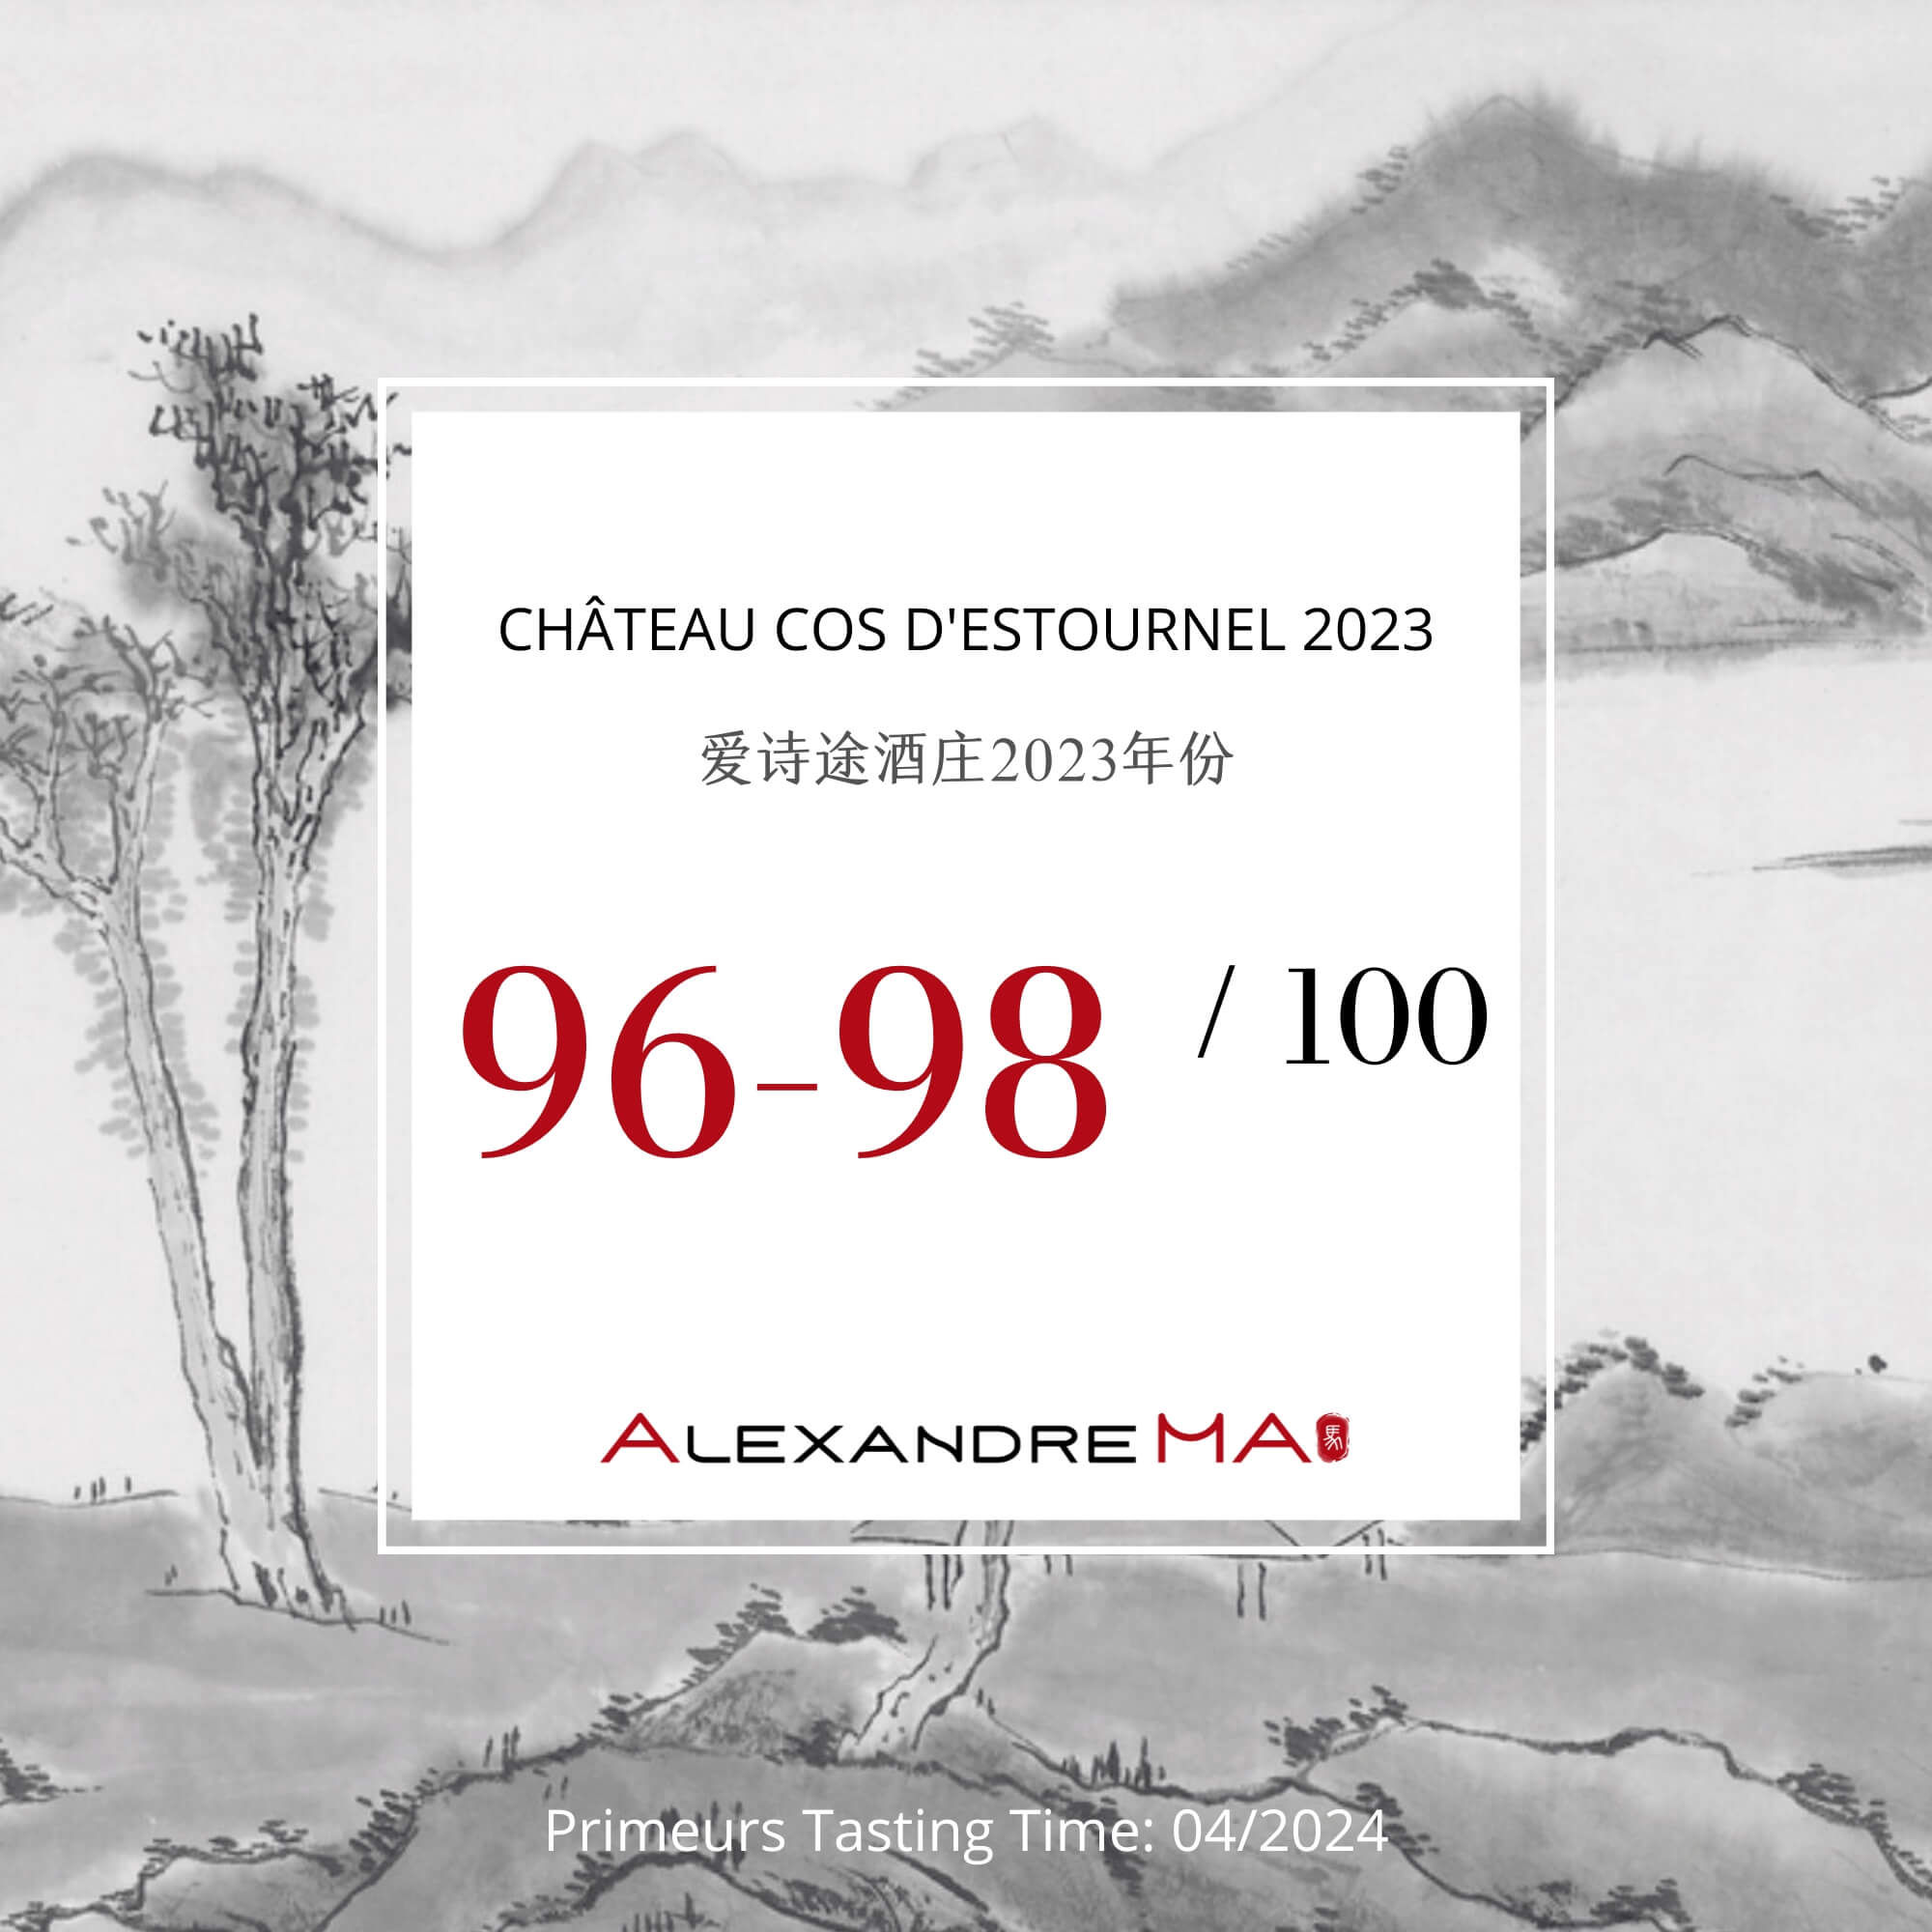 Château Cos d’Estournel 2023 Primeurs 爱诗途酒庄 - Alexandre Ma